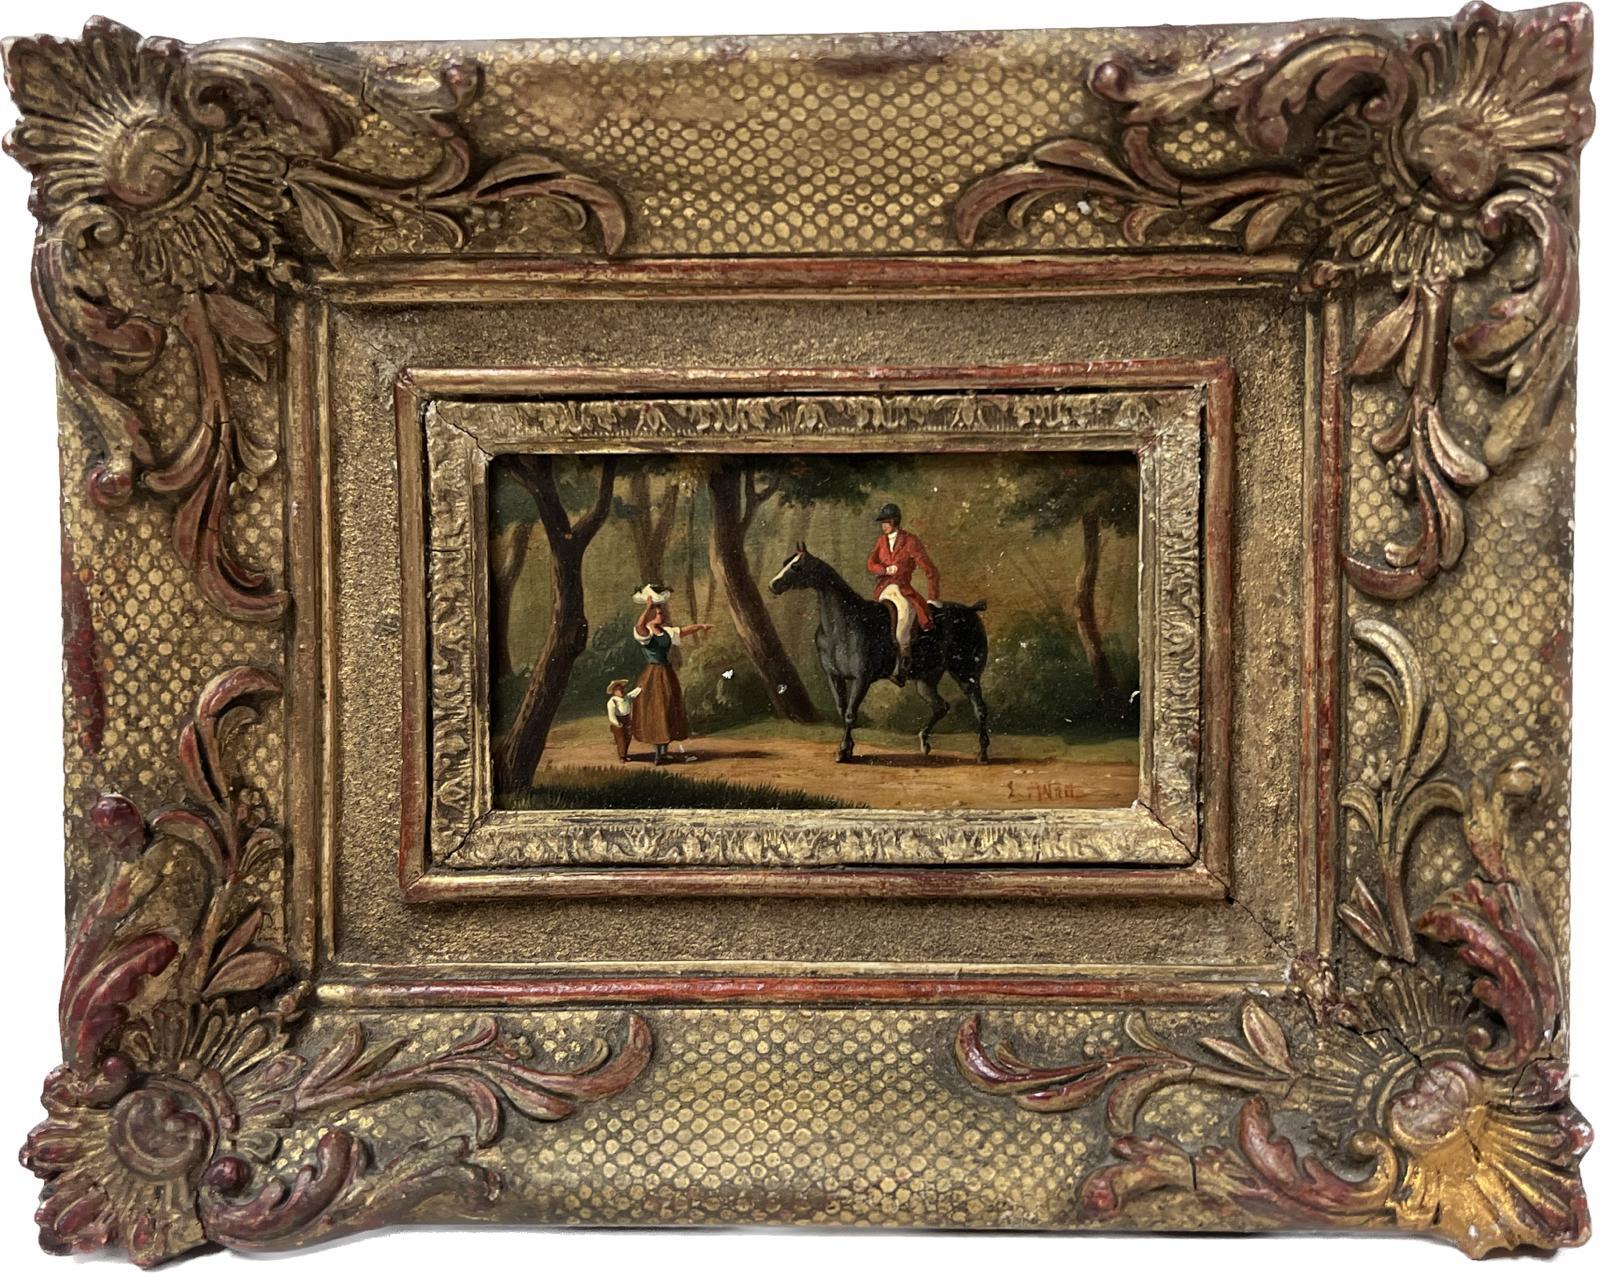 Animal Painting French School - Huntsman français du 19ème siècle - Paysage en bois sur dos de cheval encadré